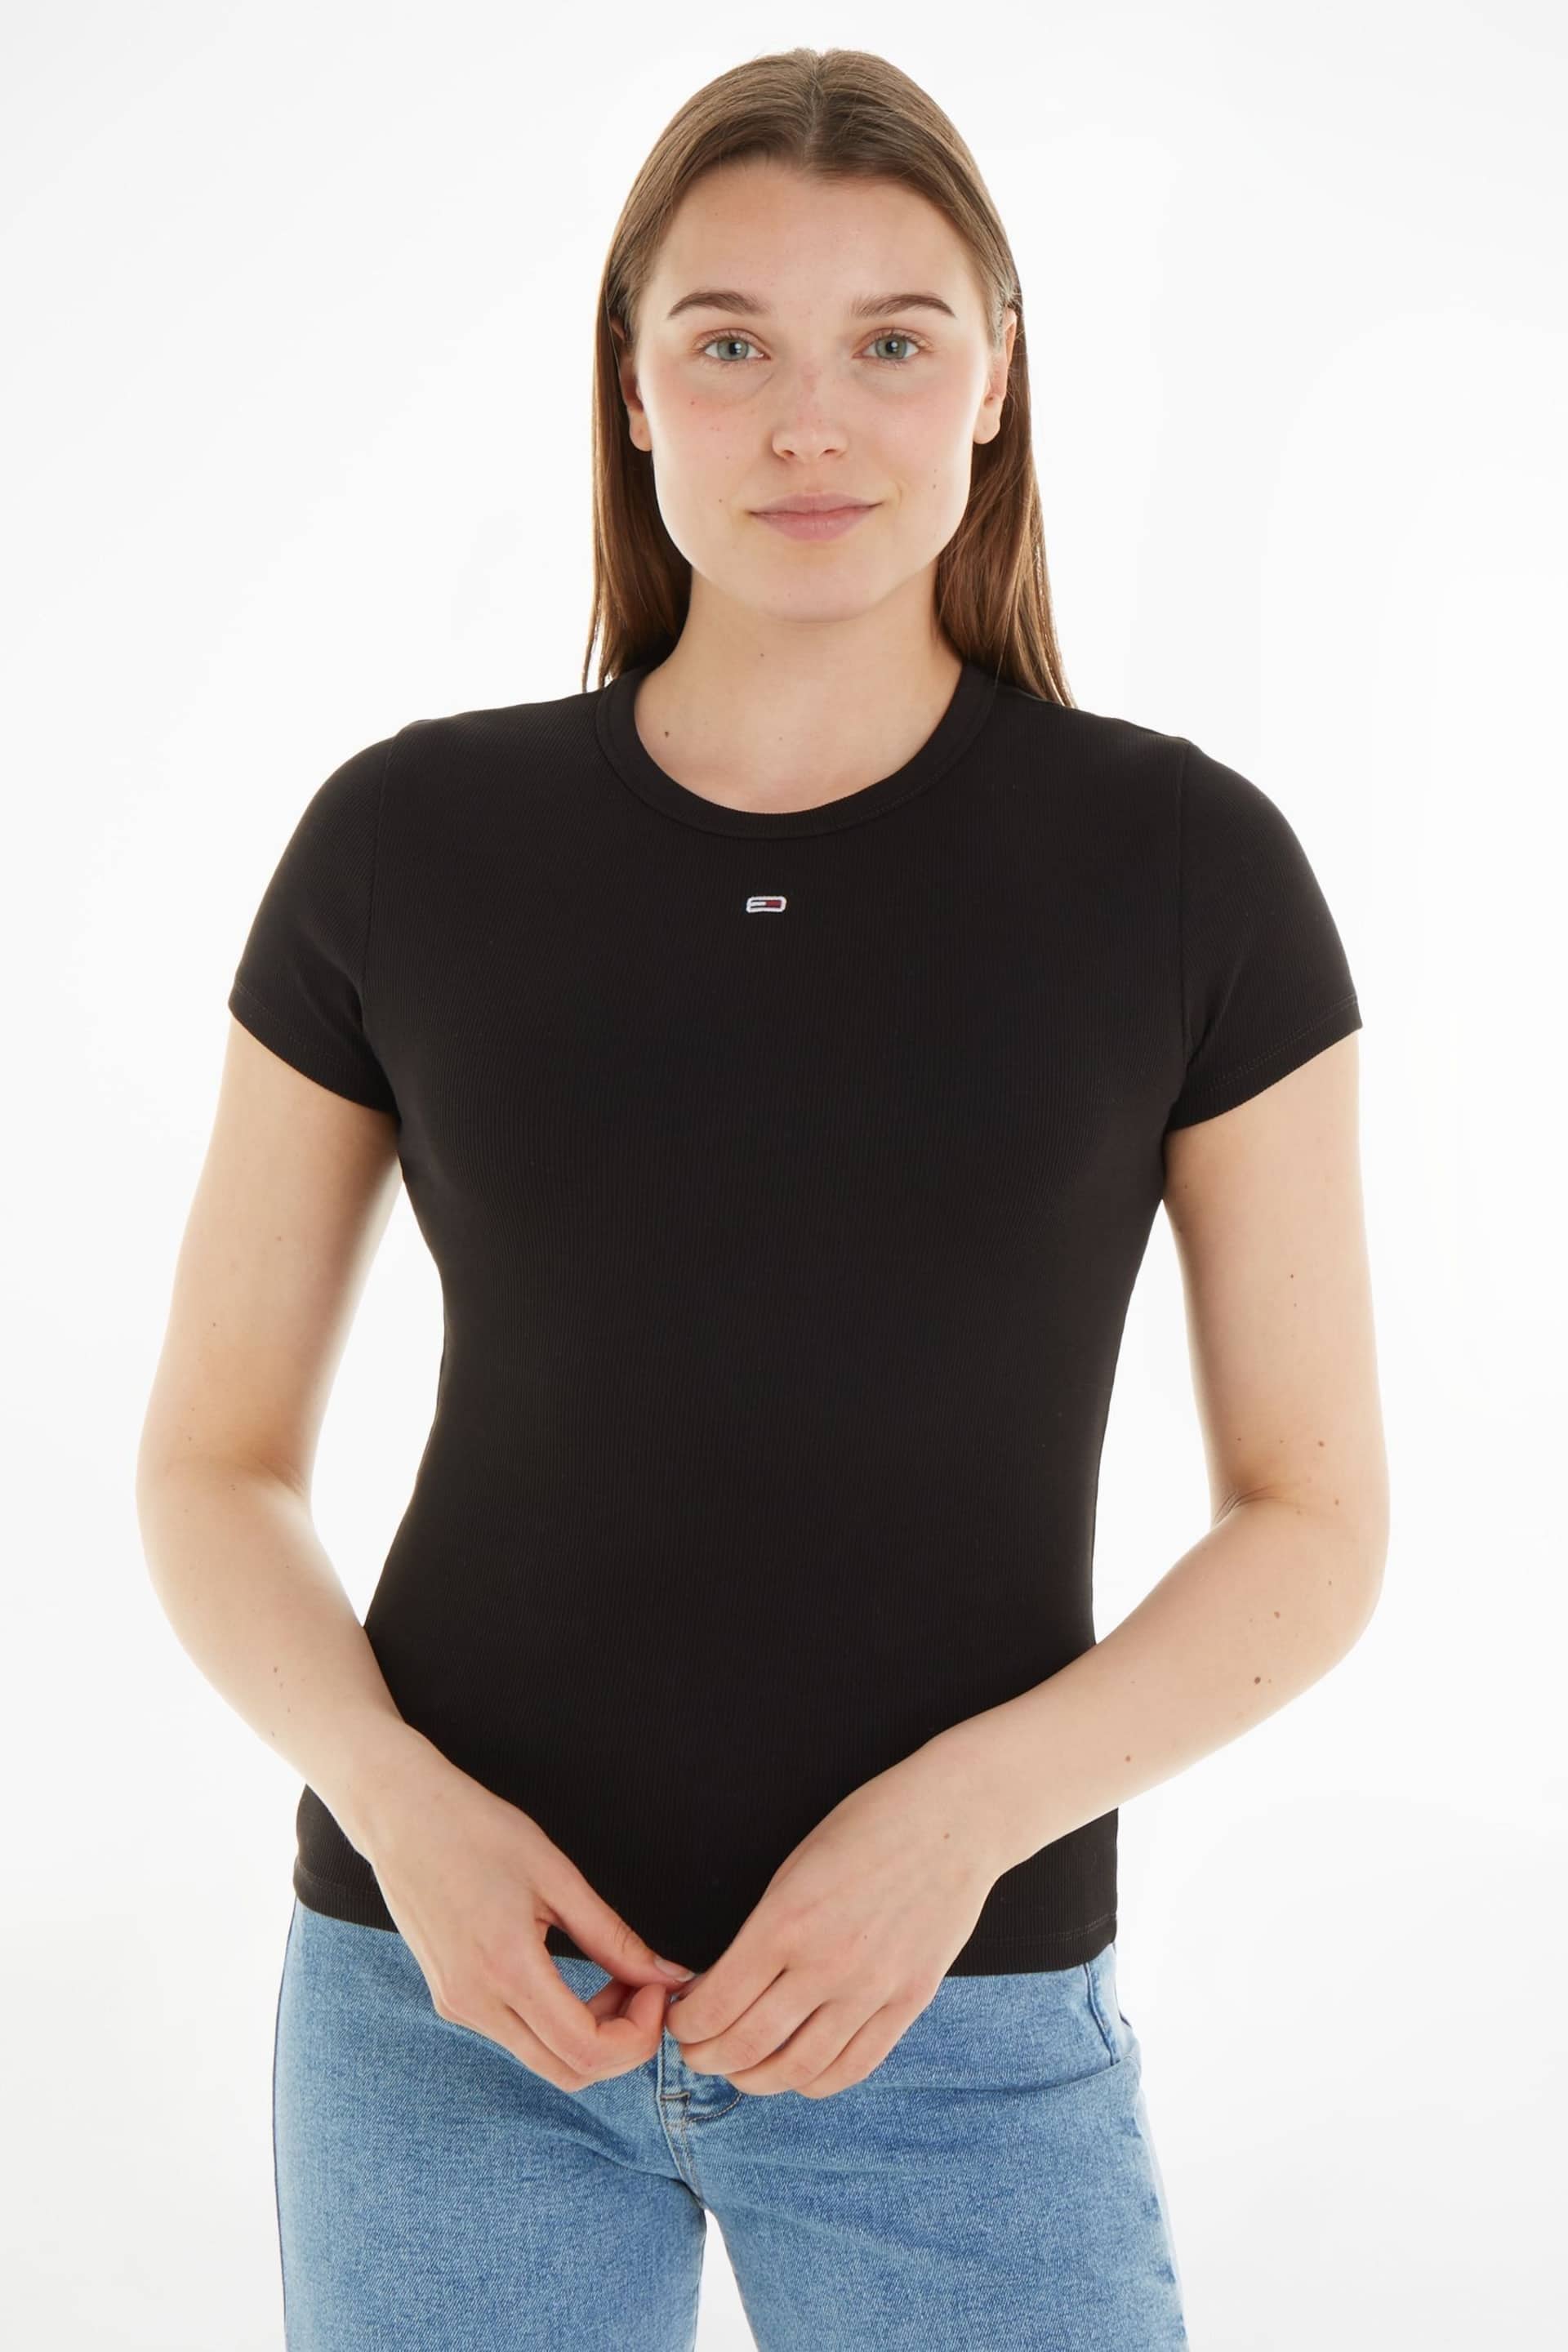 Tommy Hilfiger Slim Essential Rib Black T-Shirt - Image 1 of 1